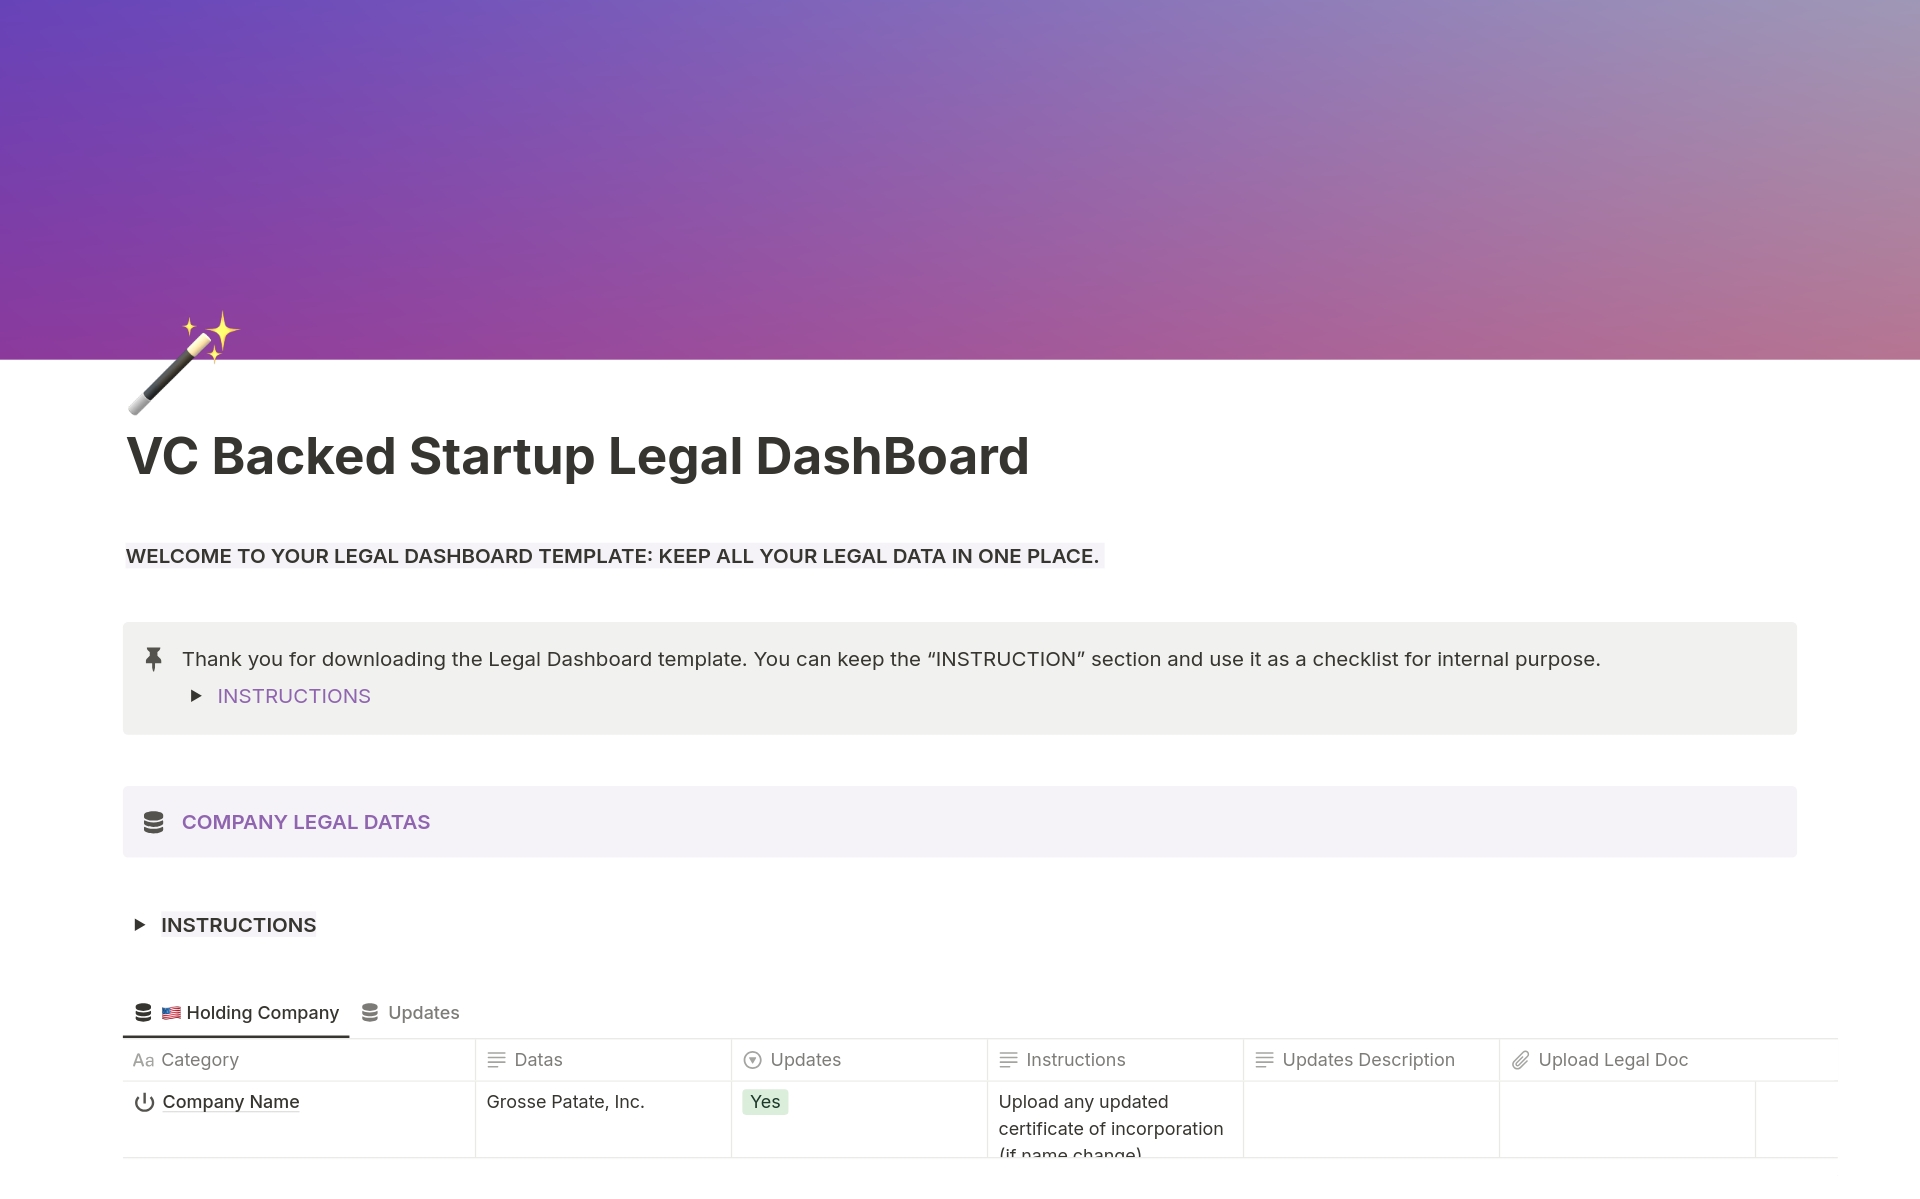 Uma prévia do modelo para VC Backed Startup Legal Dashboard 🌎 